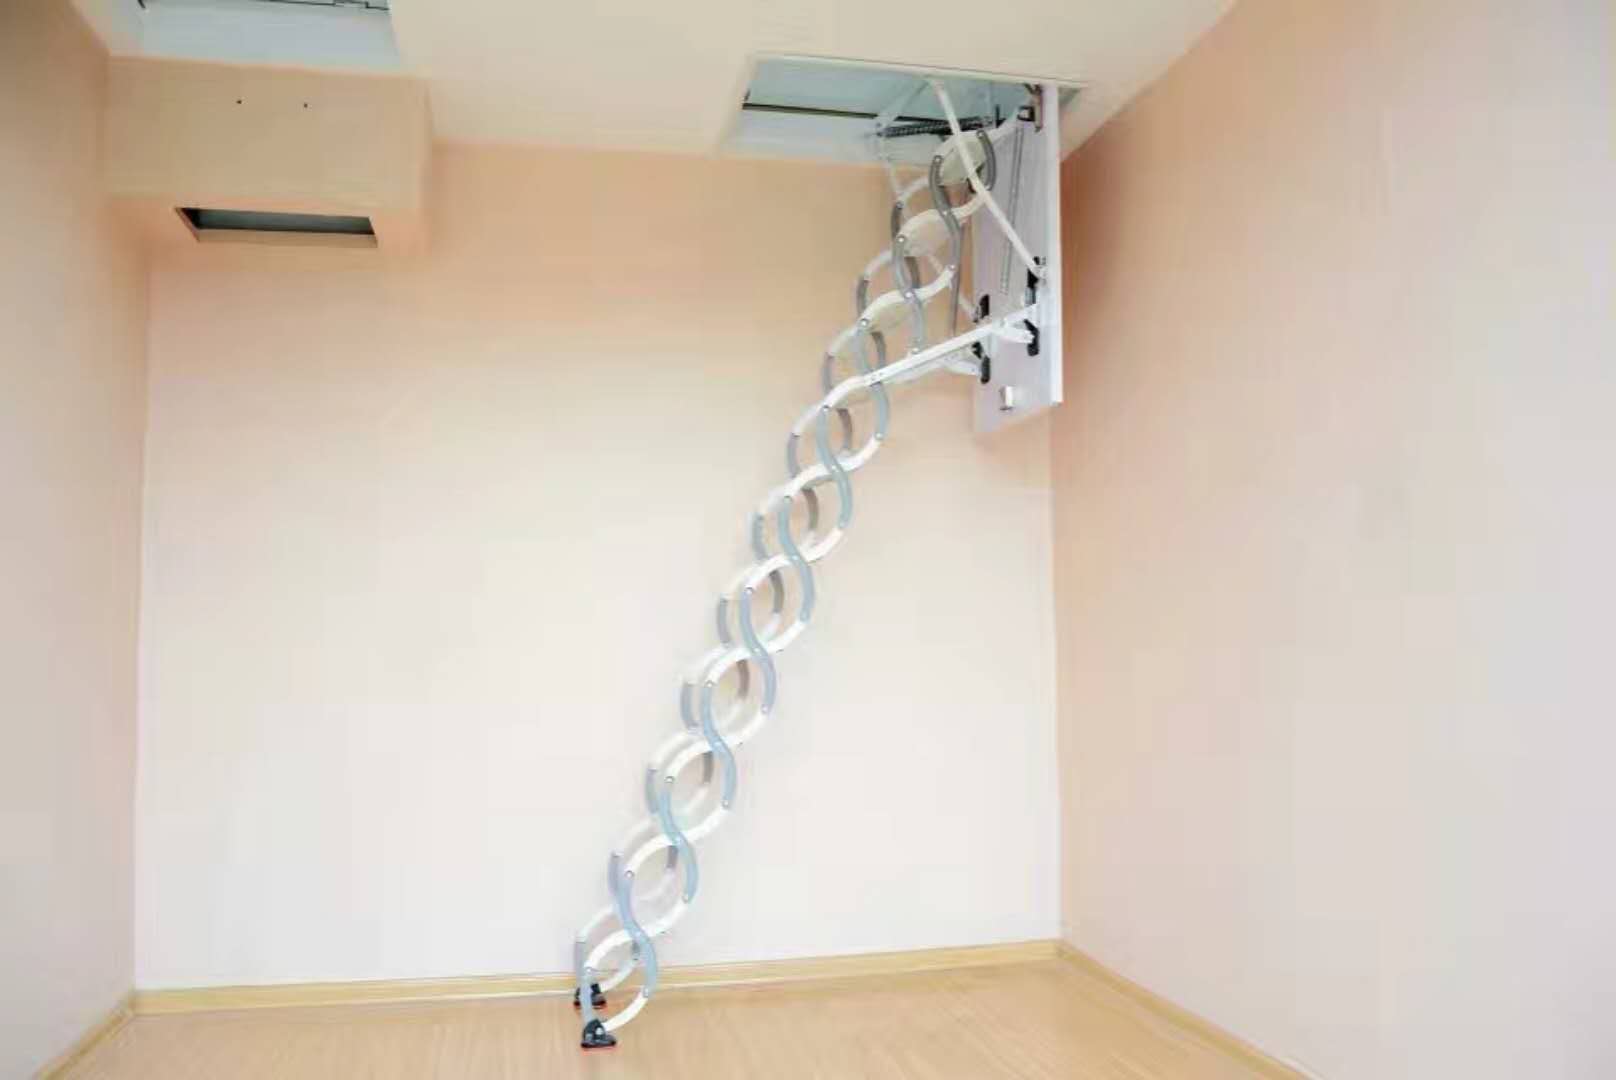 丽江市全自动伸缩楼梯提供安装服务